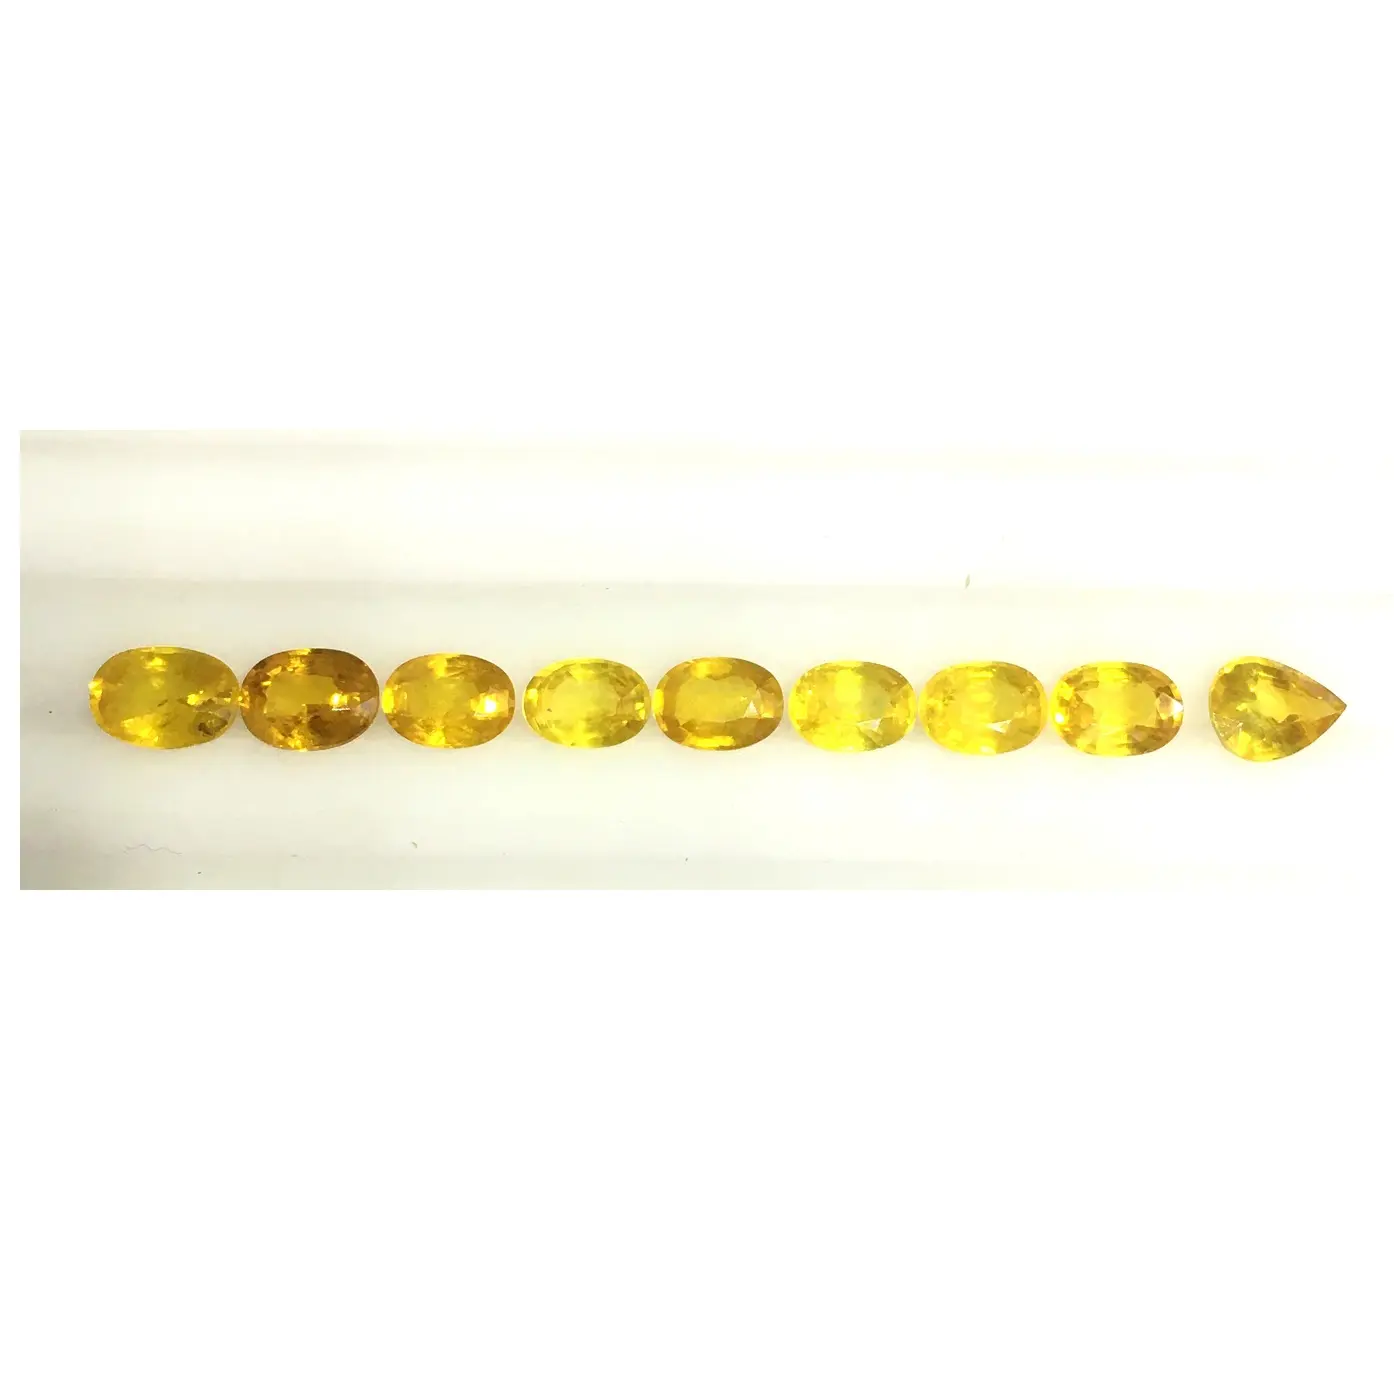 Migliore qualità ovale forma di pera giallo zaffiro sciolto gemma di pietra calibrata anello dimensione zaffiri giallo gemma di pietra per la fornitura in tutto il mondo